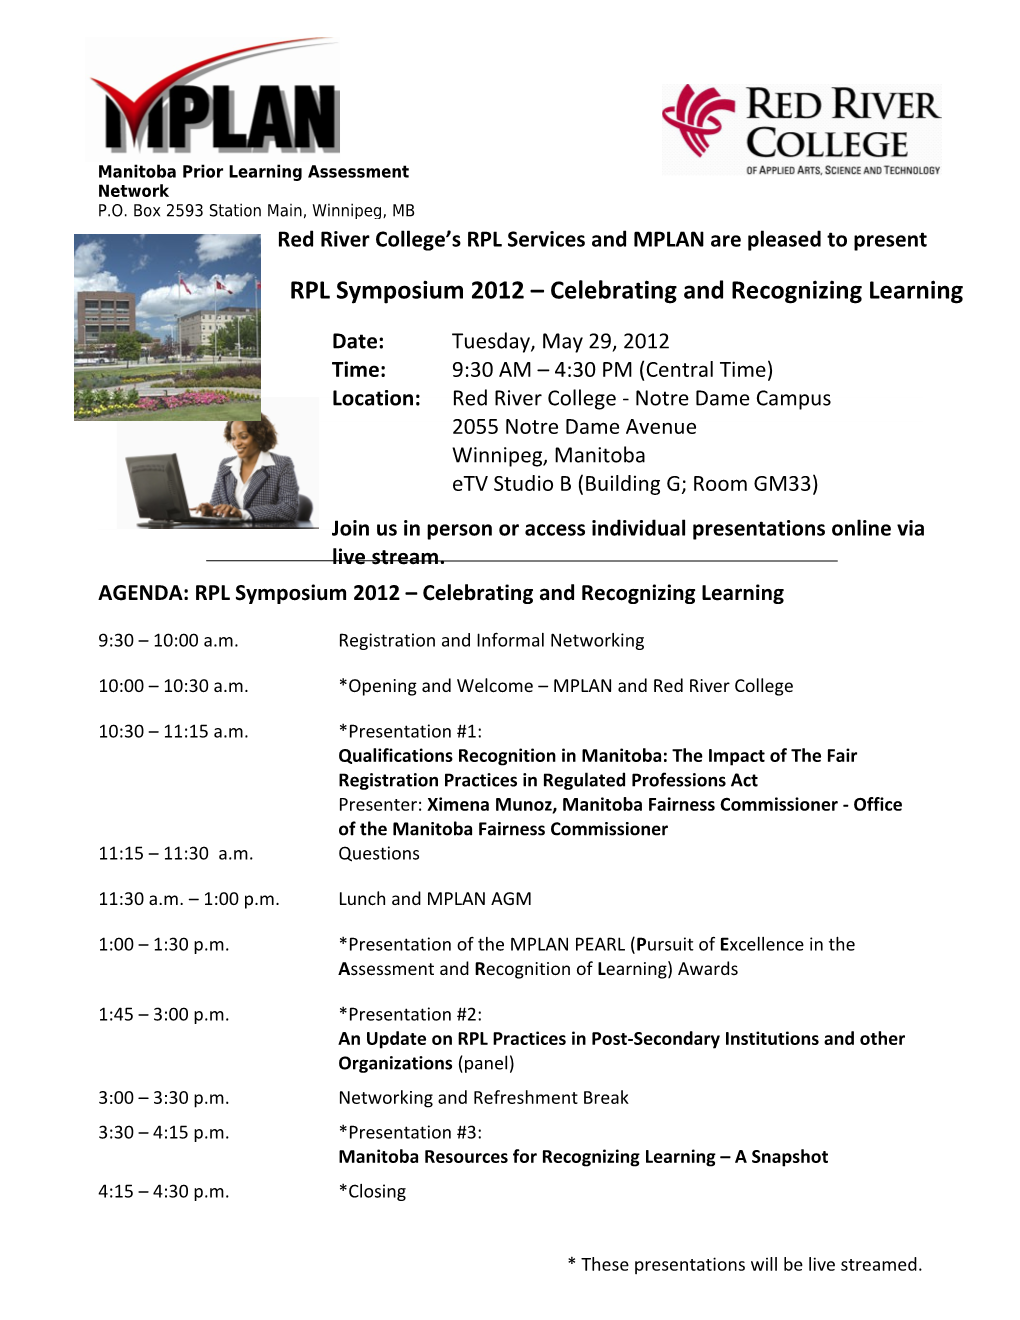 AGENDA: RPL Symposium 2012 Celebrating and Recognizing Learning